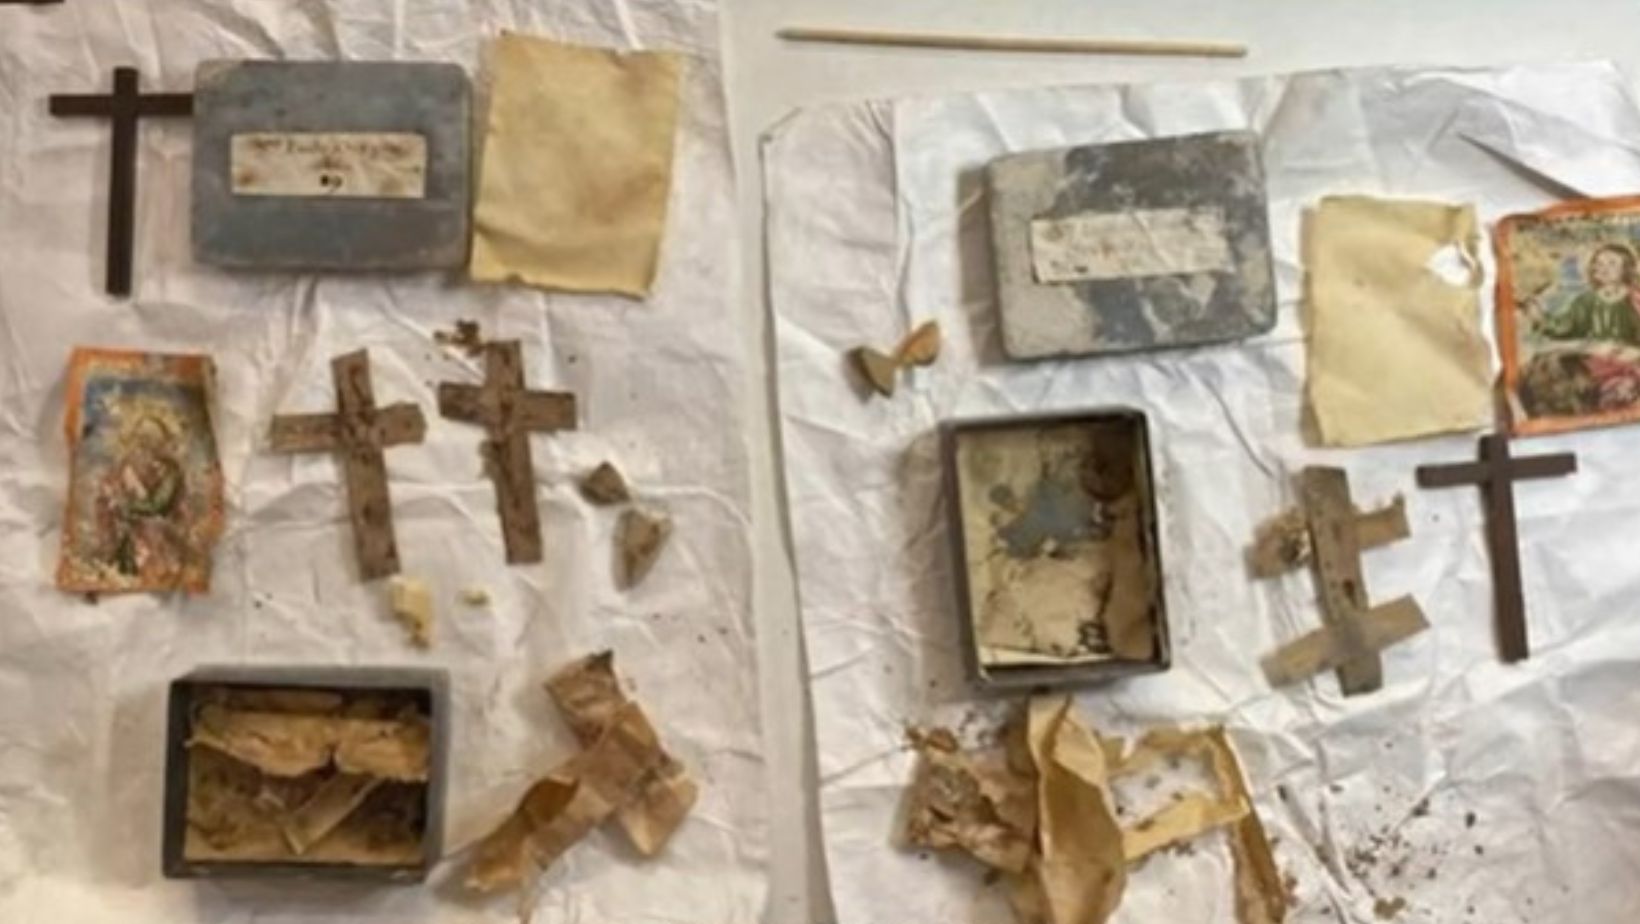 Las 23 cajas de plomo halladas en las paredes de la Catedral Metropolitana contenían reliquias, pinturas y objetos de gran valor religioso.
(Captura de pantalla Gobierno de México)